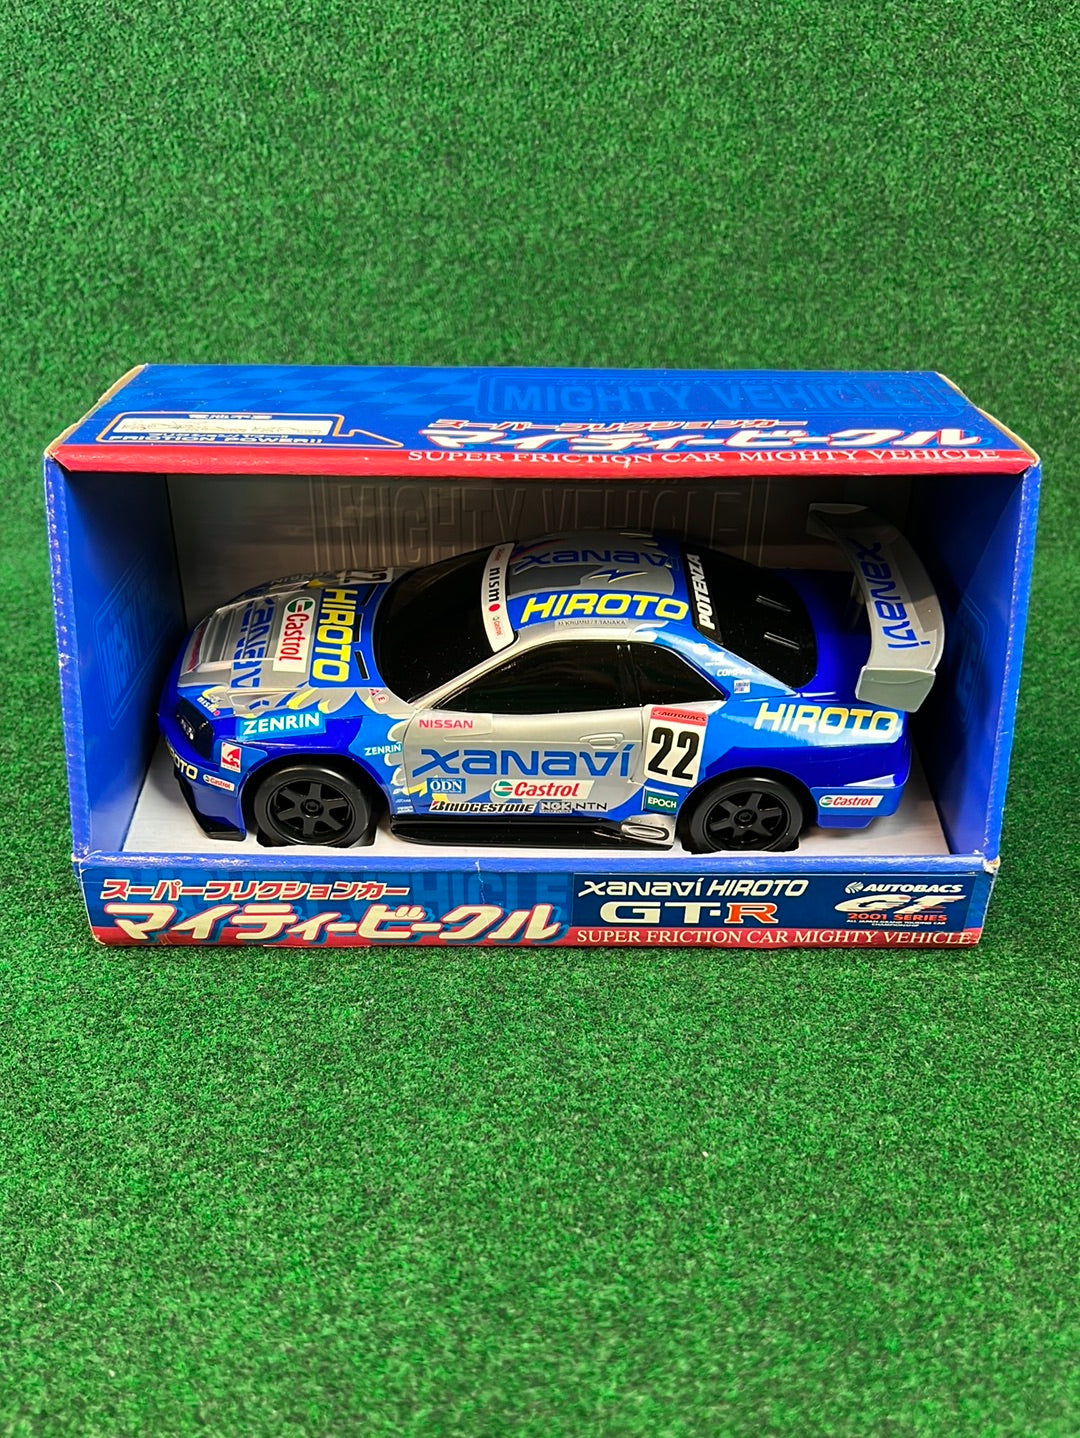 XANAVI JGTC 2001 Nissan Skyline R34 GTR (Super Friction) Toy Car